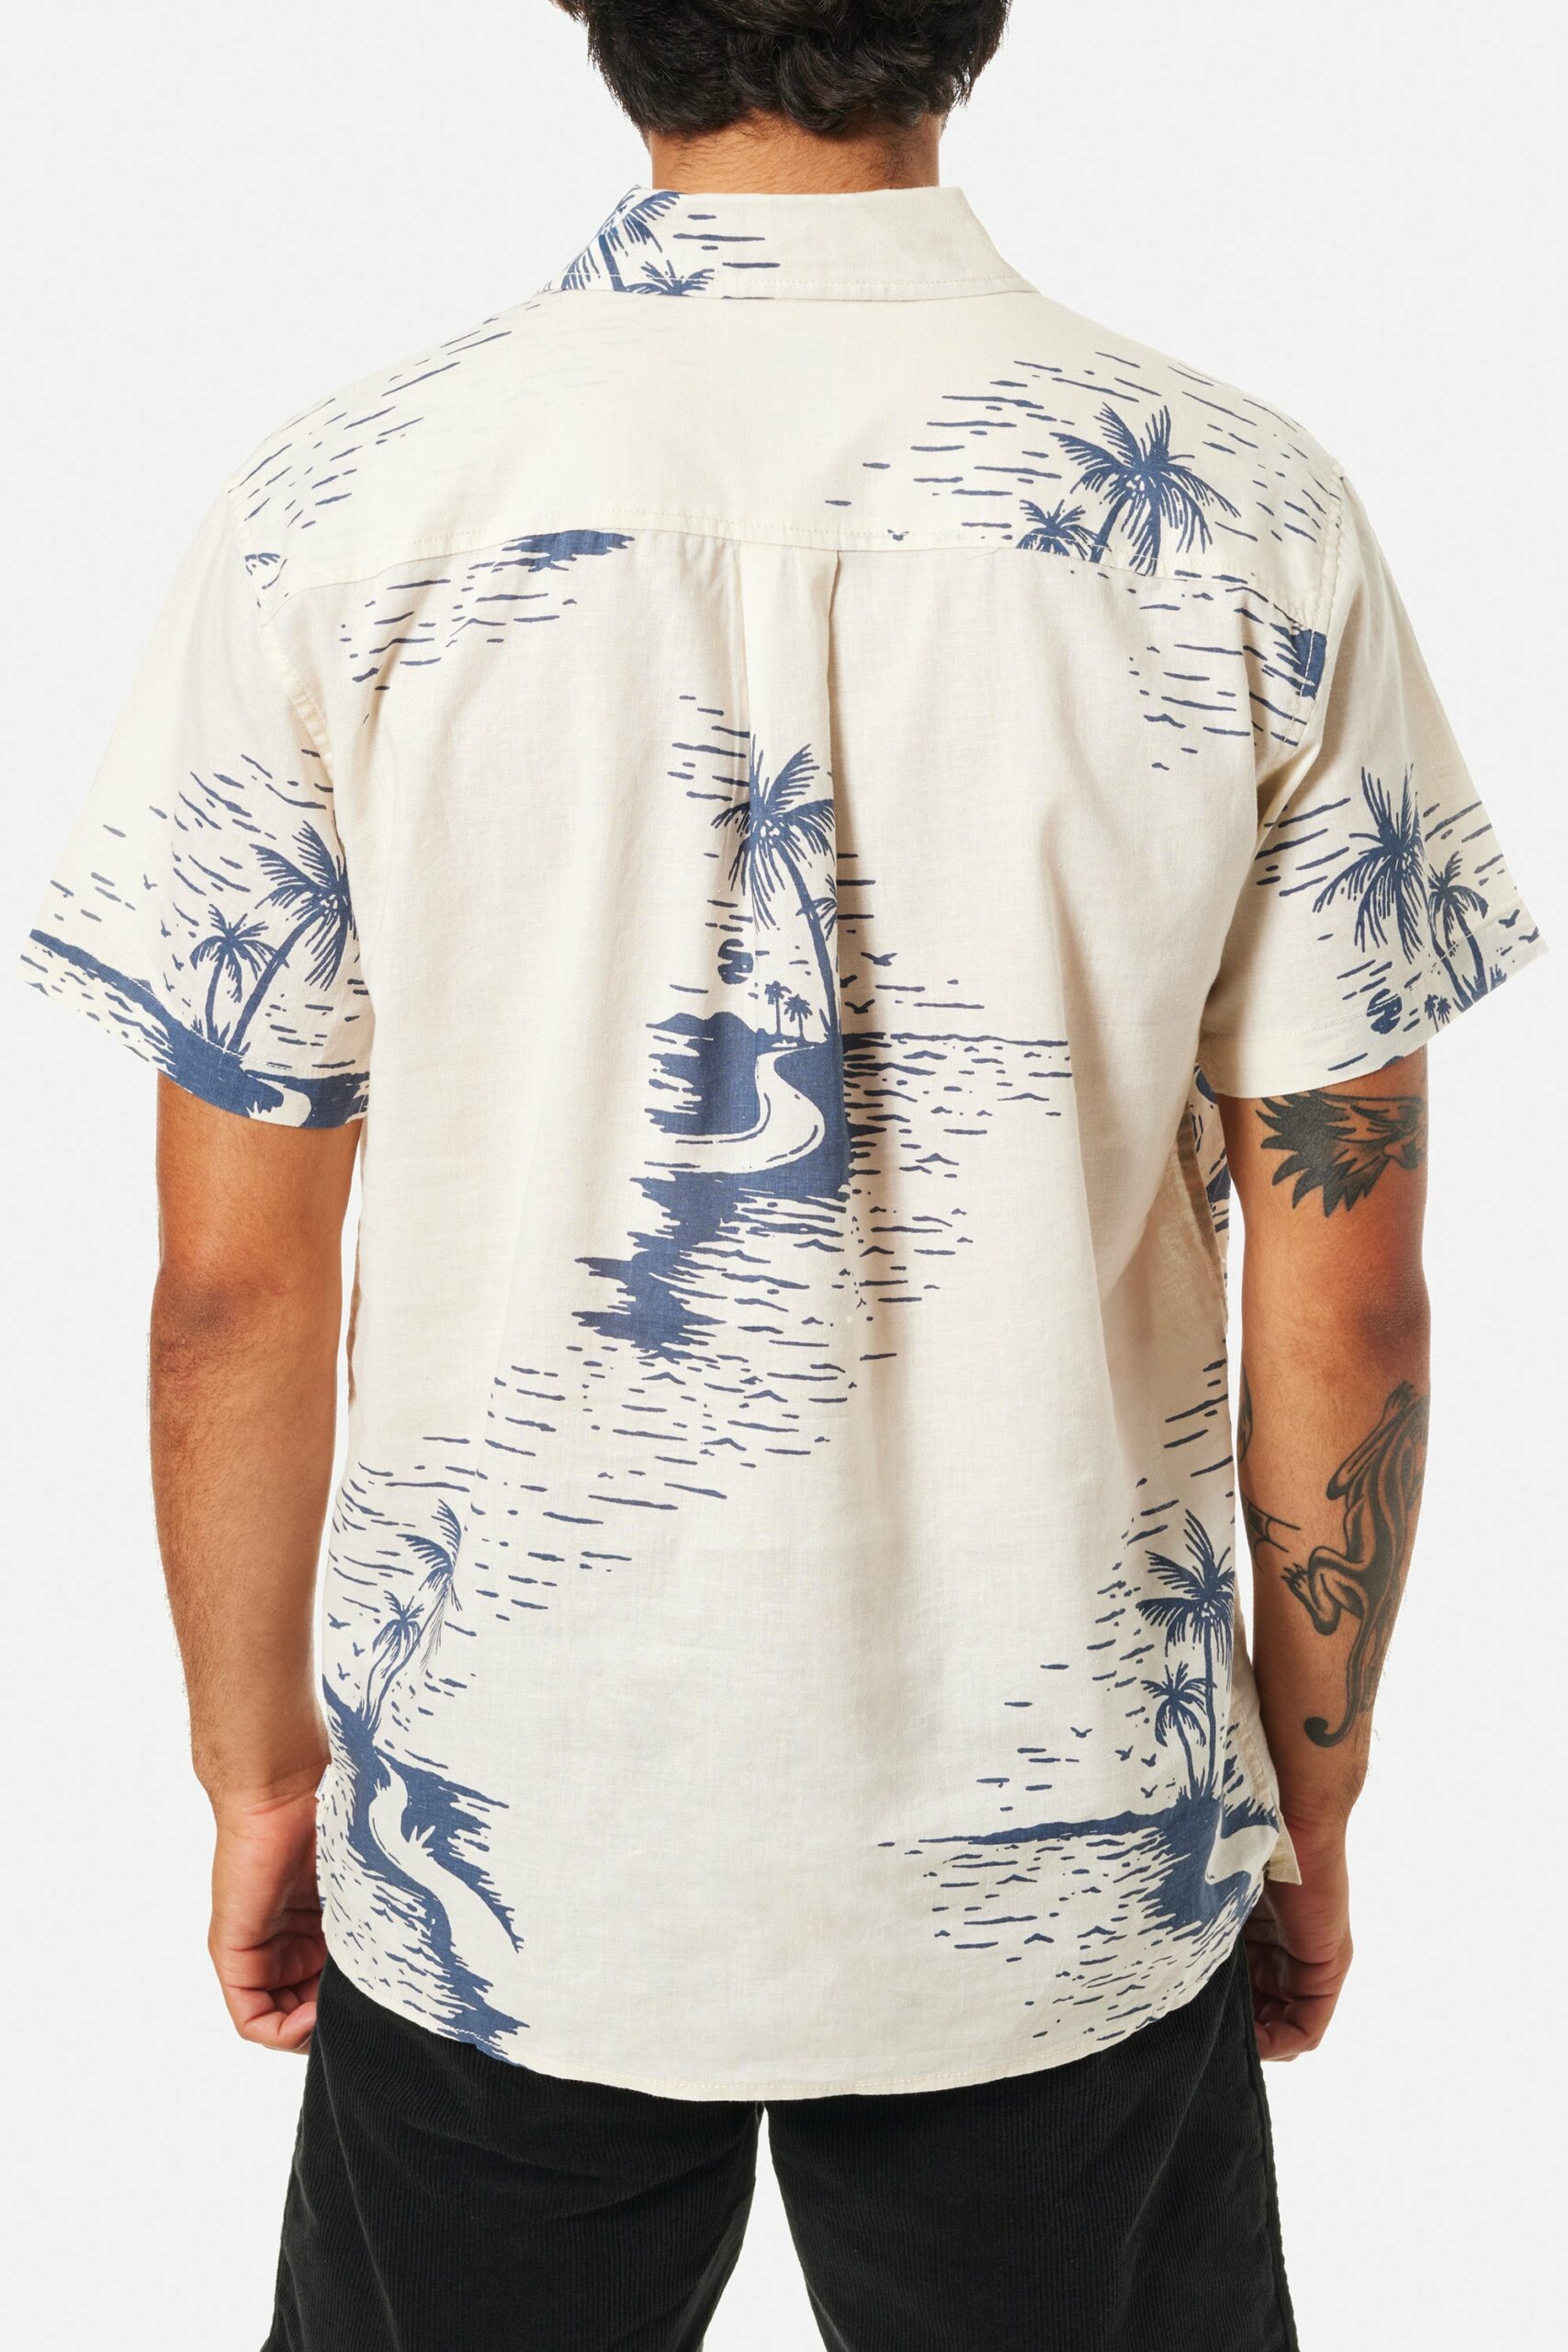 Chemise katin homme au design hawaïen bleu et blanche